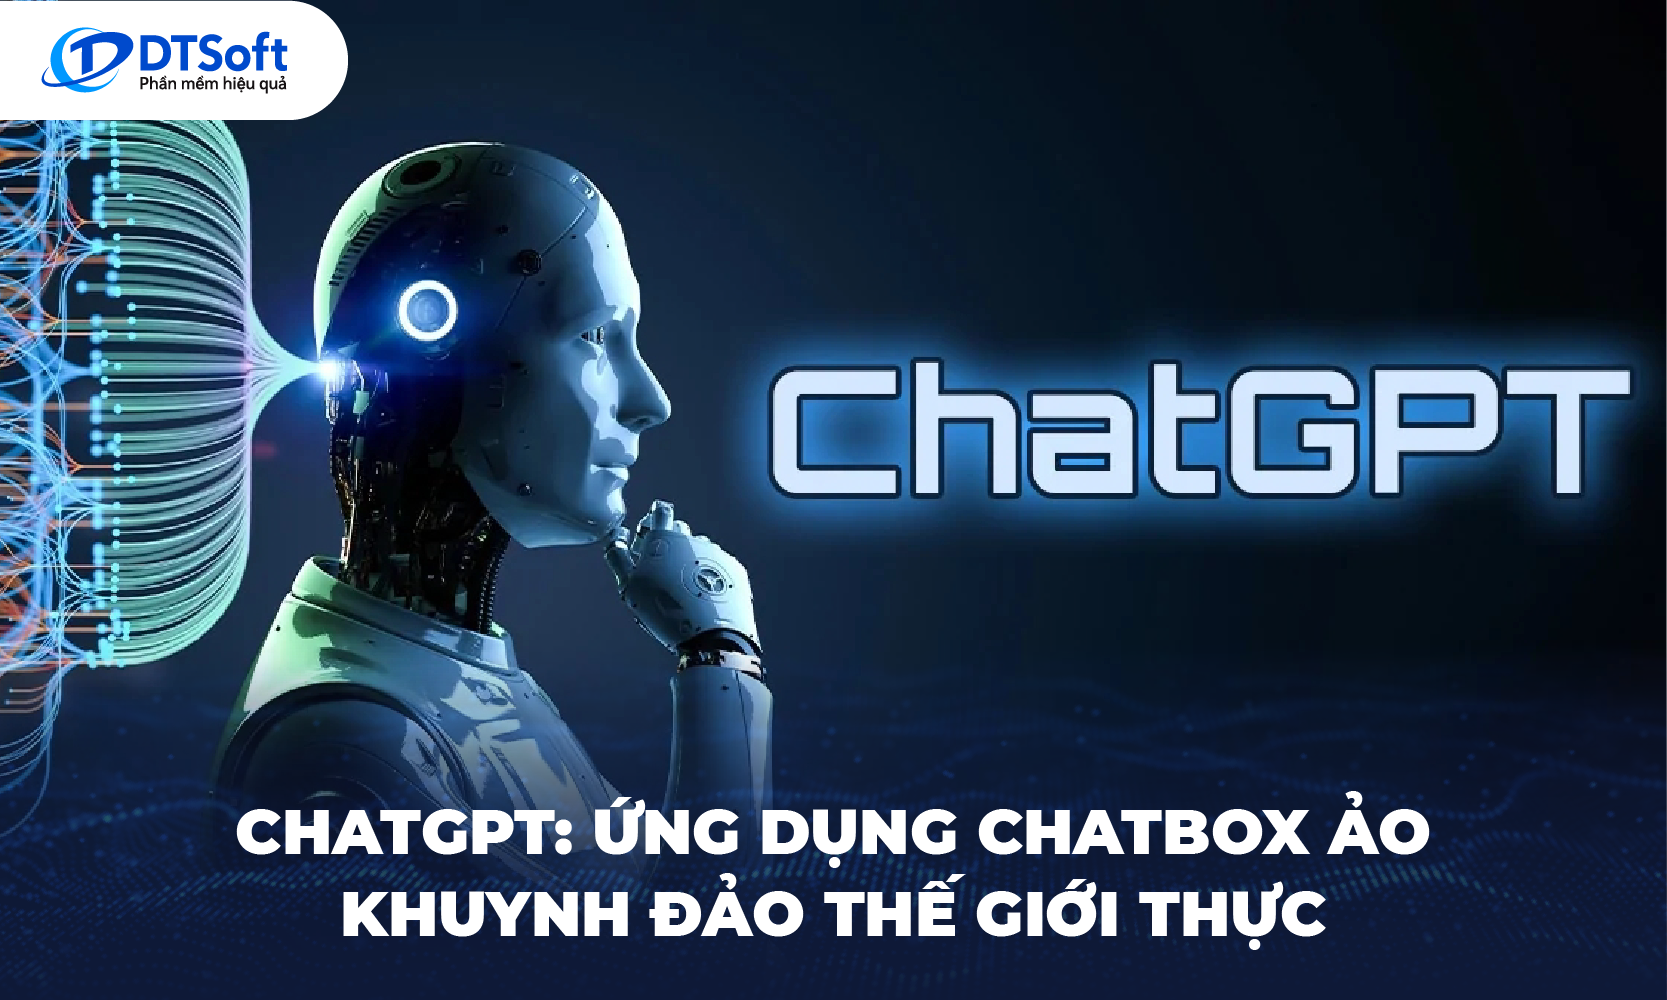 ChatGPT: Ứng dụng Chatbox ảo khuynh đảo thế giới thực